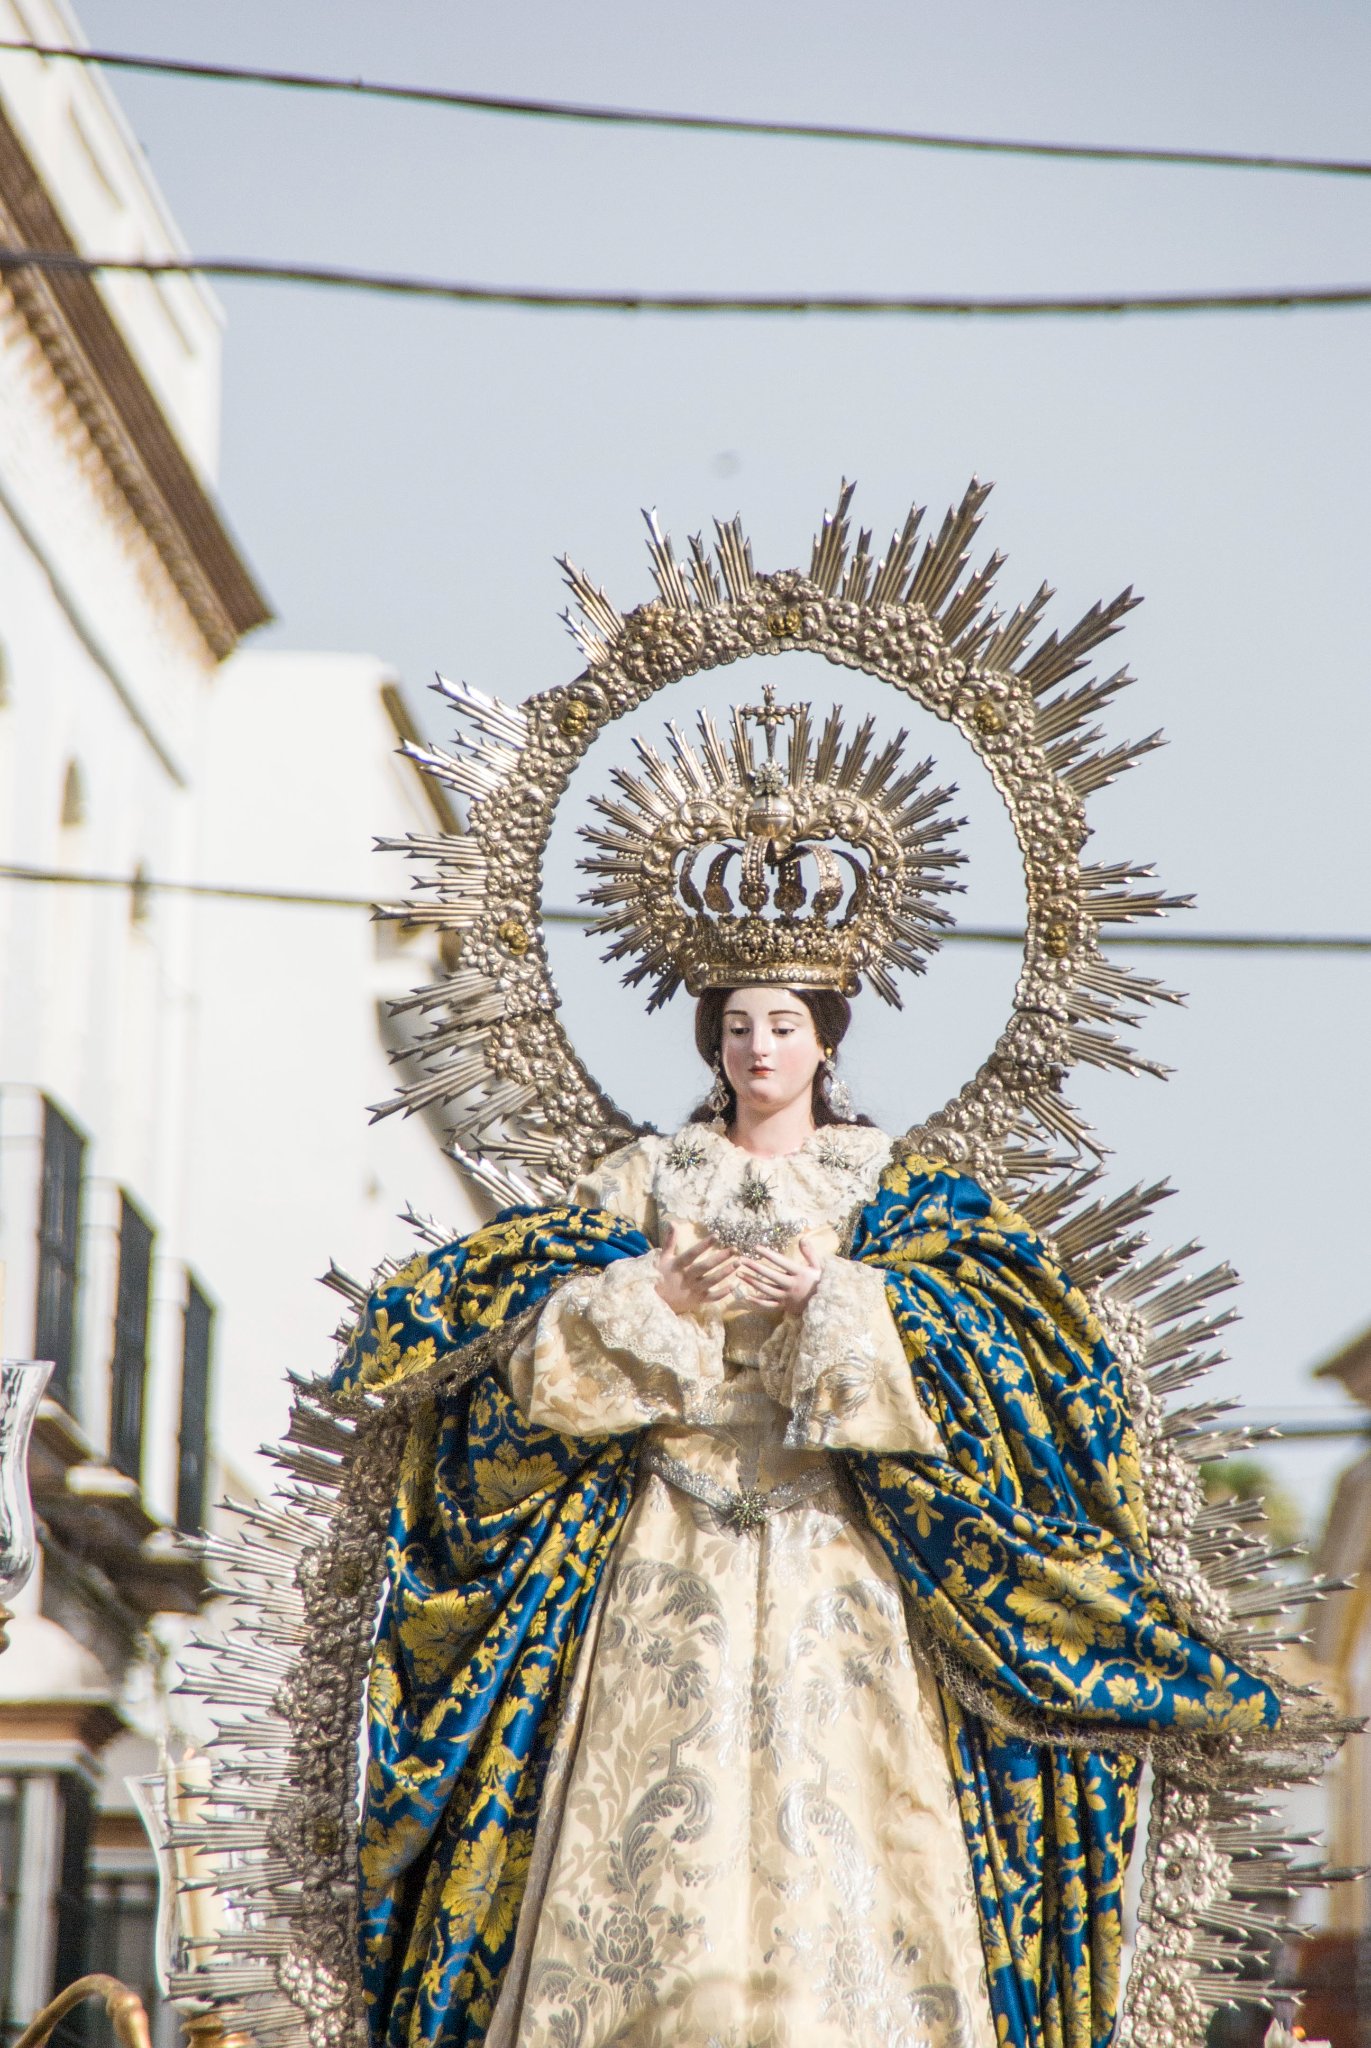 La Historia de la Semana Santa en Sevilla: Tradición y Devoción